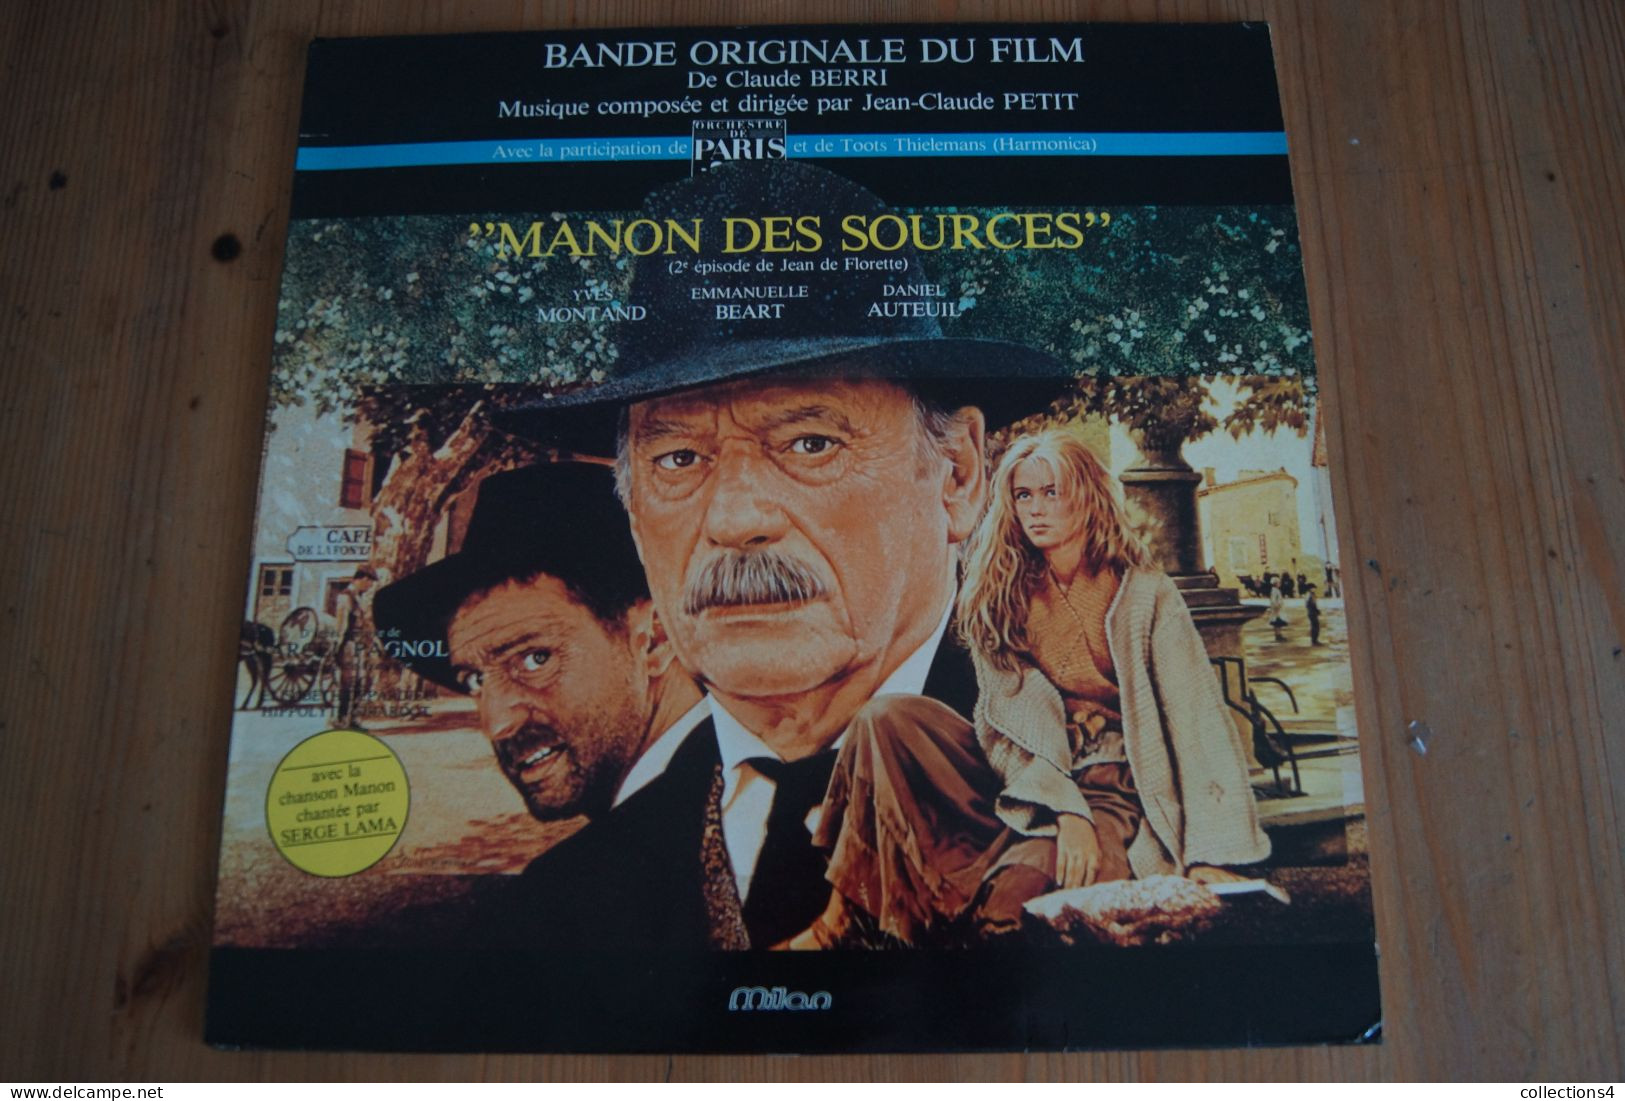 MANON DES SOURCES JEAN CLAUDE PETIT SERGE LAMA MARCEL PAGNOL EMMANUELLE BEART MONTAND DANIEL AUTEUIL LP DU FILM 1986 - Musica Di Film